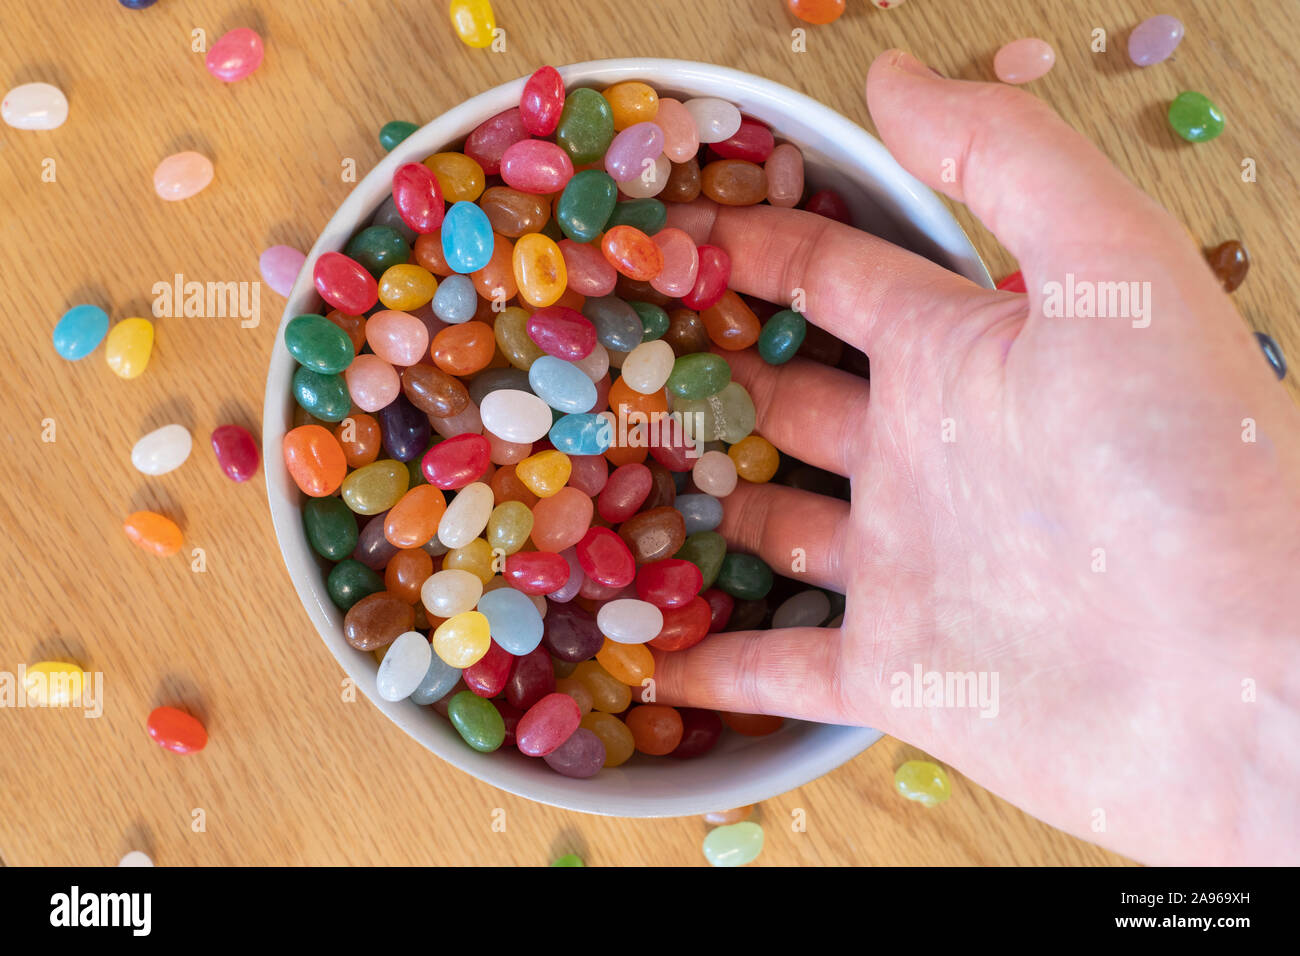 Die Hände eines erwachsenen Mannes scooping Jelly Beans in eine Schüssel voller Geleebonbons. Konzept, sucht nach Süßigkeiten, Süßwaren, Süßigkeiten, Freuden des Lebens Stockfoto